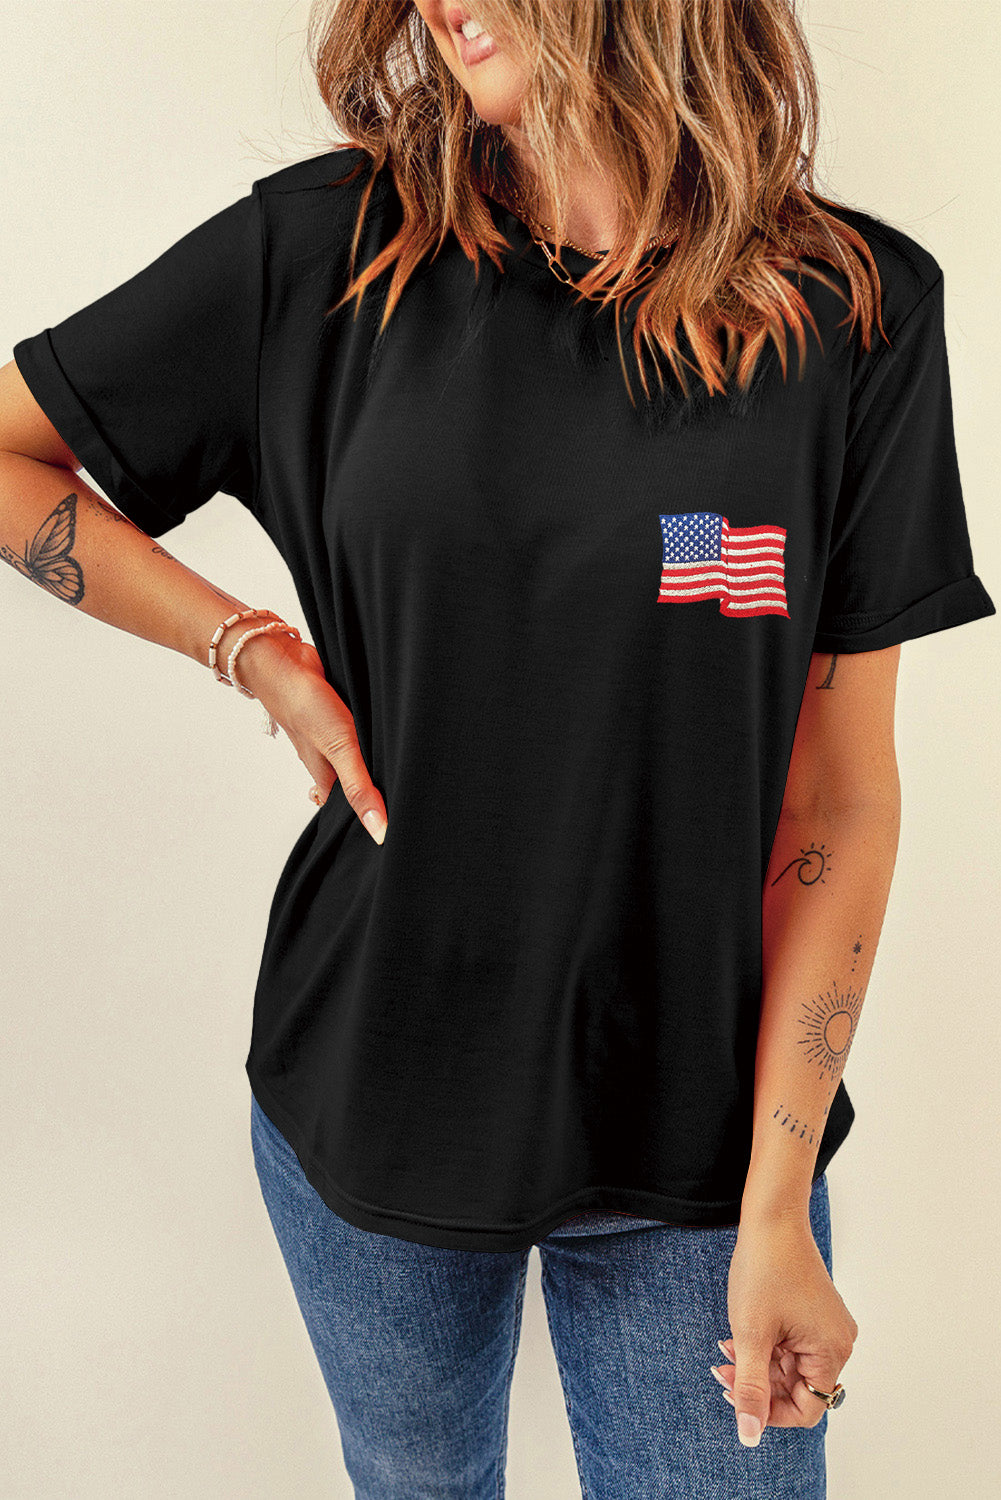 US Flag Round Neck Short Sleeve T-Shirt Sunset and Swim Black S 